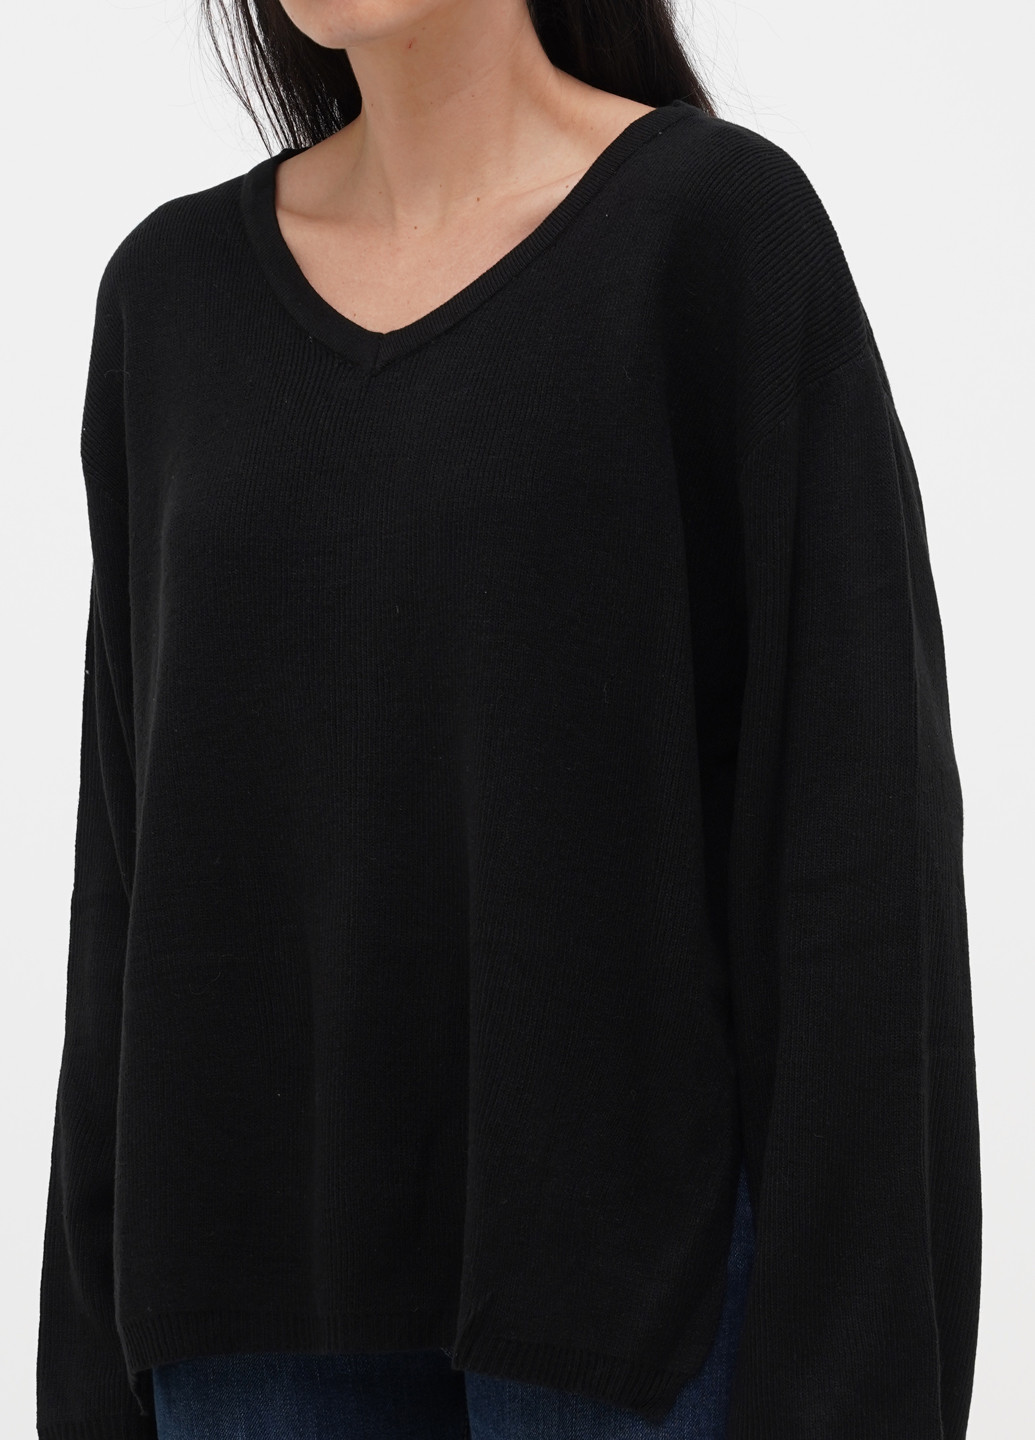 Черный демисезонный пуловер пуловер Boohoo